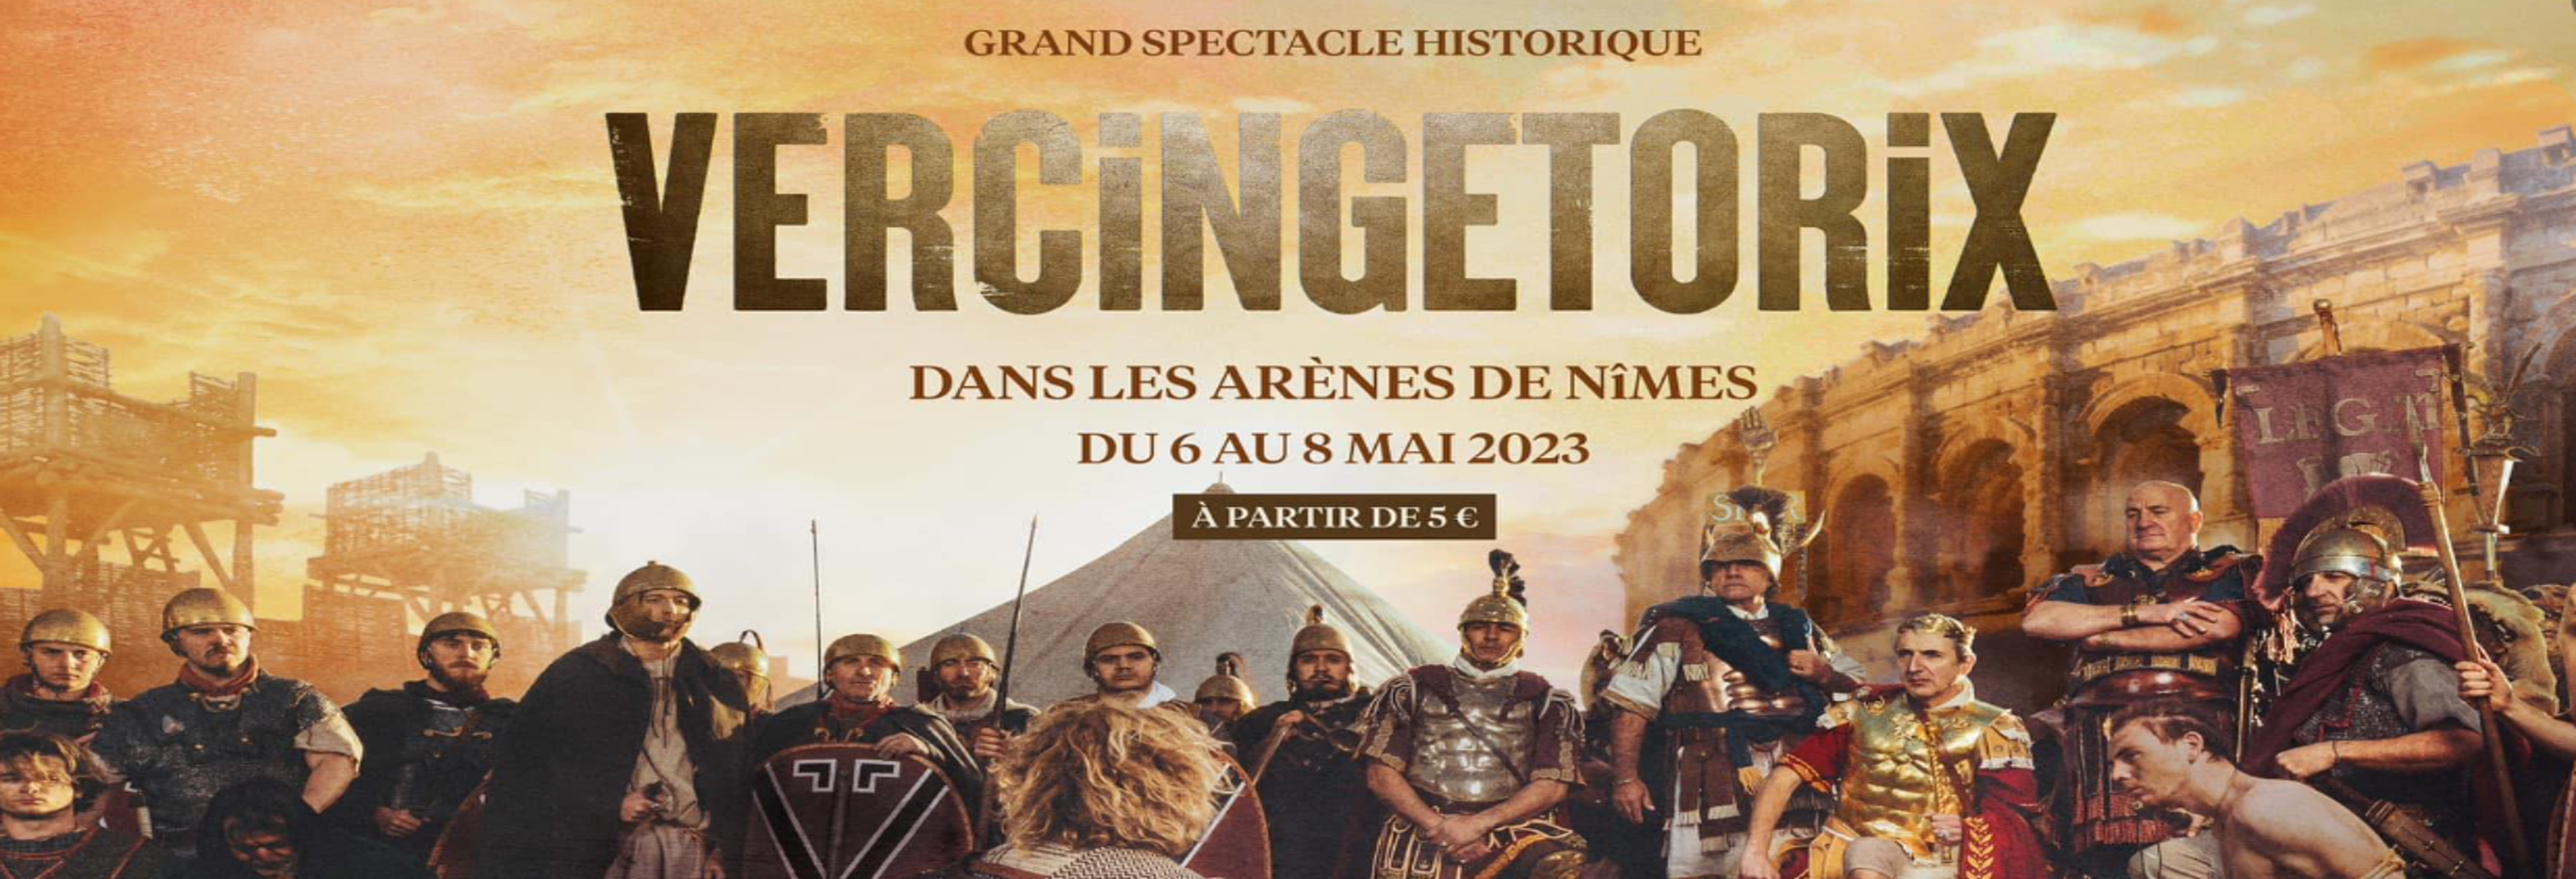 vercingetorix-spectacle-historique-dans-les-arenes-du-6-au-8-mai